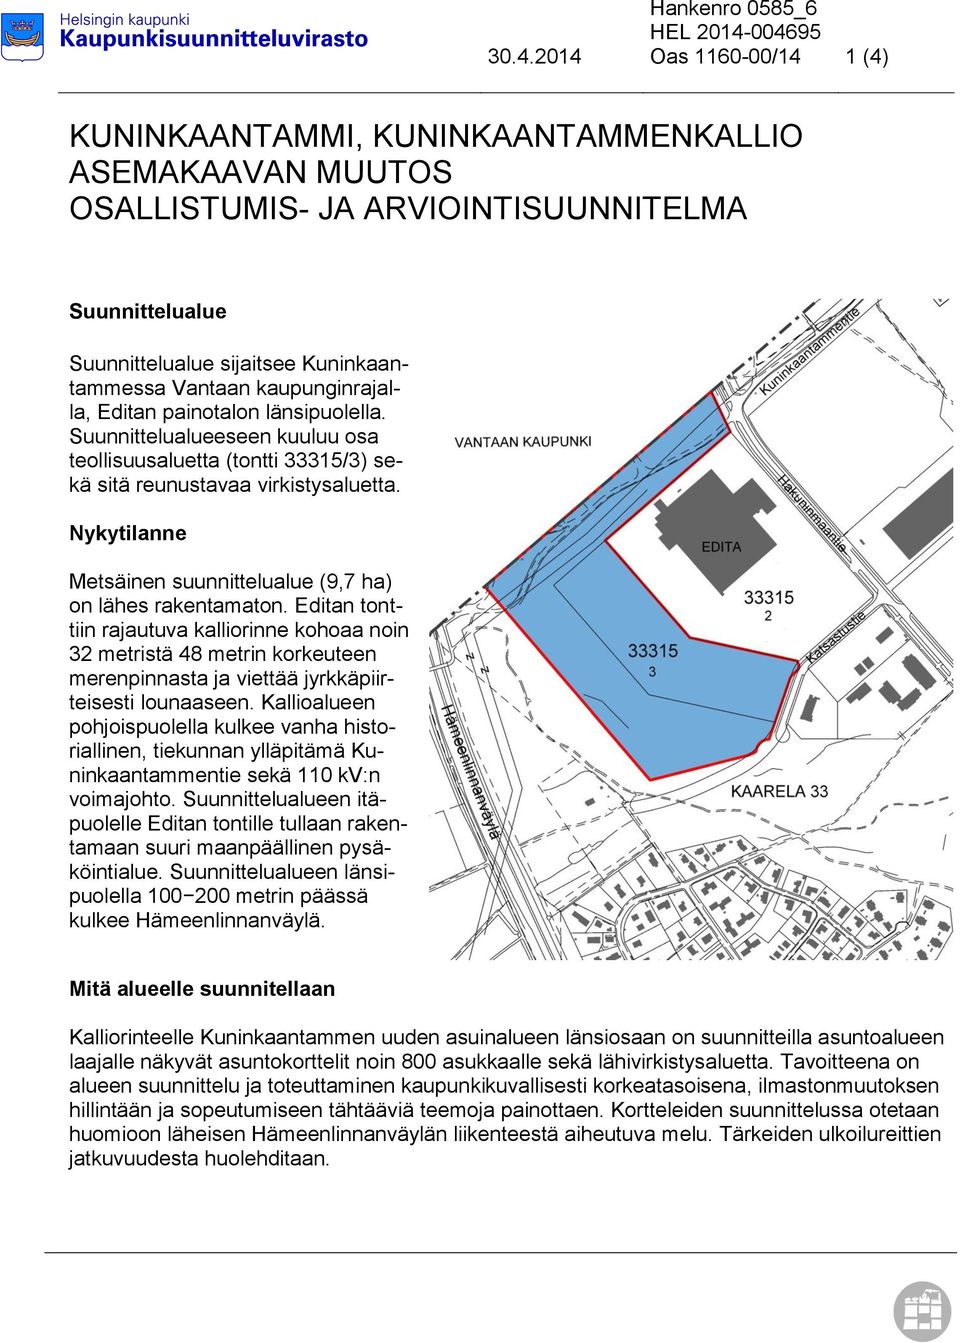 Vantaan kaupunginrajalla, Editan painotalon länsipuolella. Suunnittelualueeseen kuuluu osa teollisuusaluetta (tontti 33315/3) sekä sitä reunustavaa virkistysaluetta.